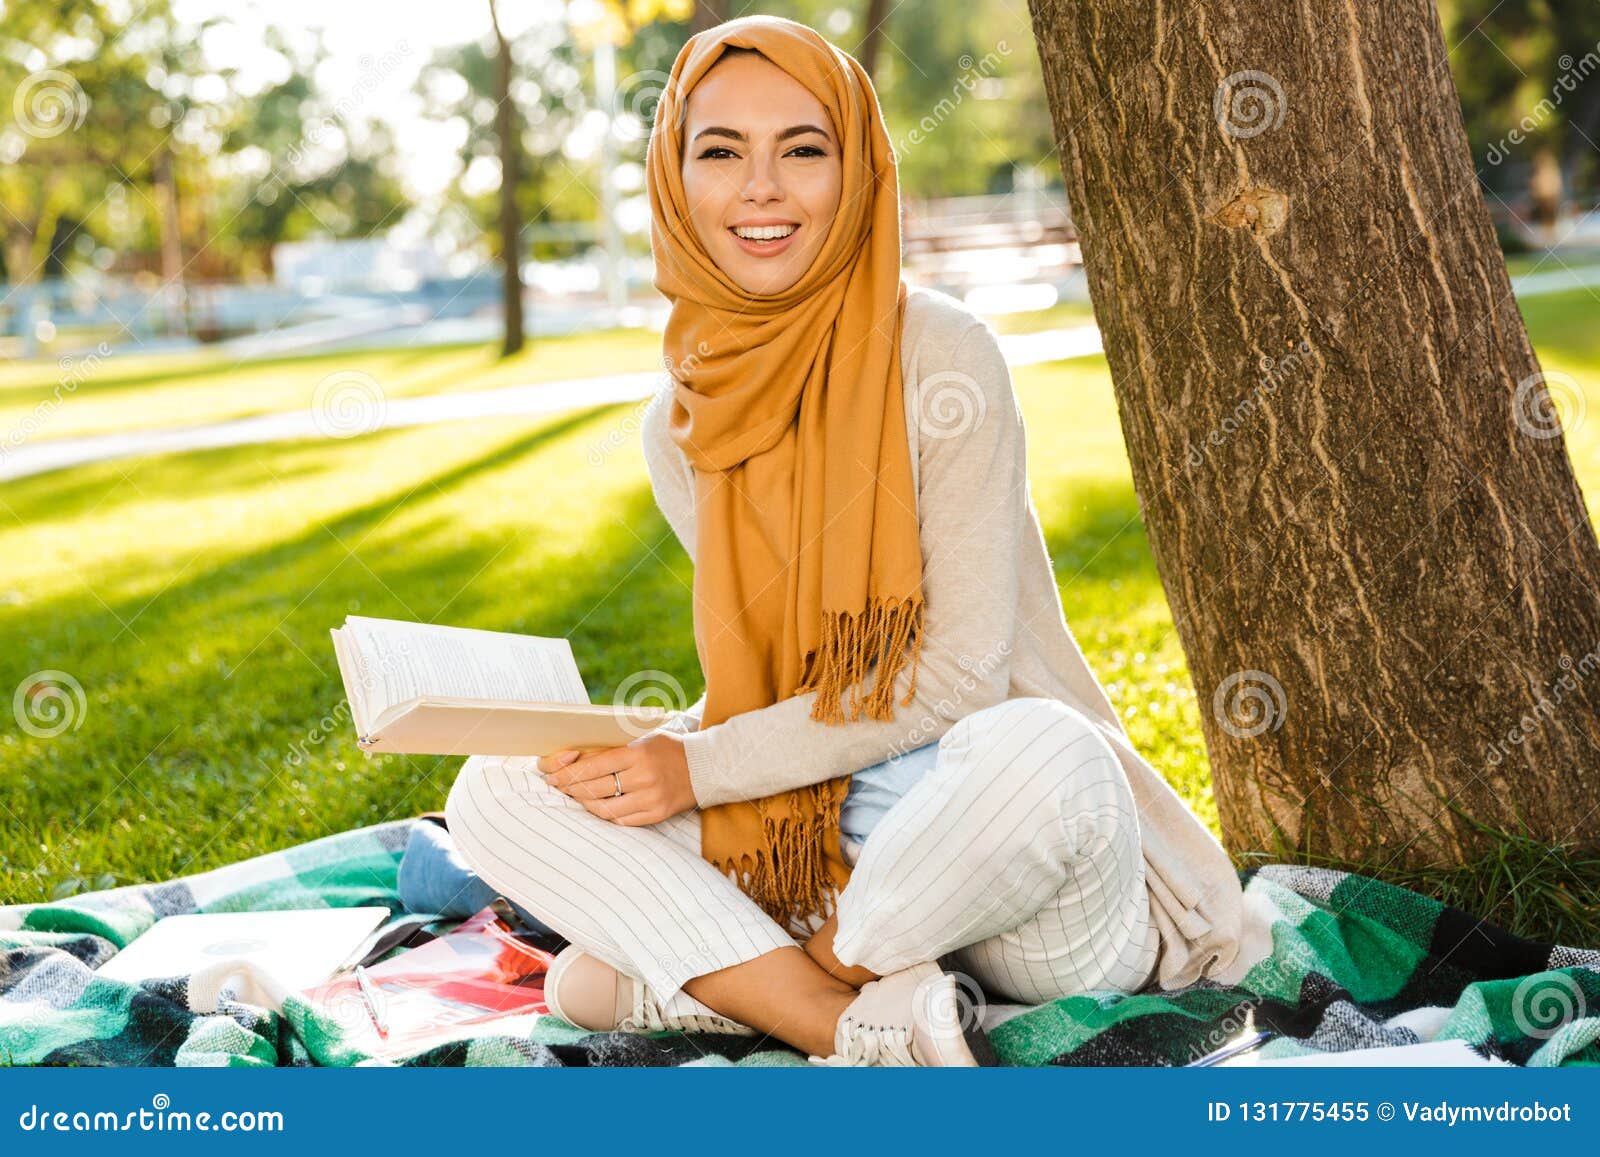 Foto Del Pañuelo Que Lleva De Mujer árabe Hermosa Que Se Sienta En La Manta En Parque Verde Imagen de archivo - Imagen de sentada, musulmanes: 131775455